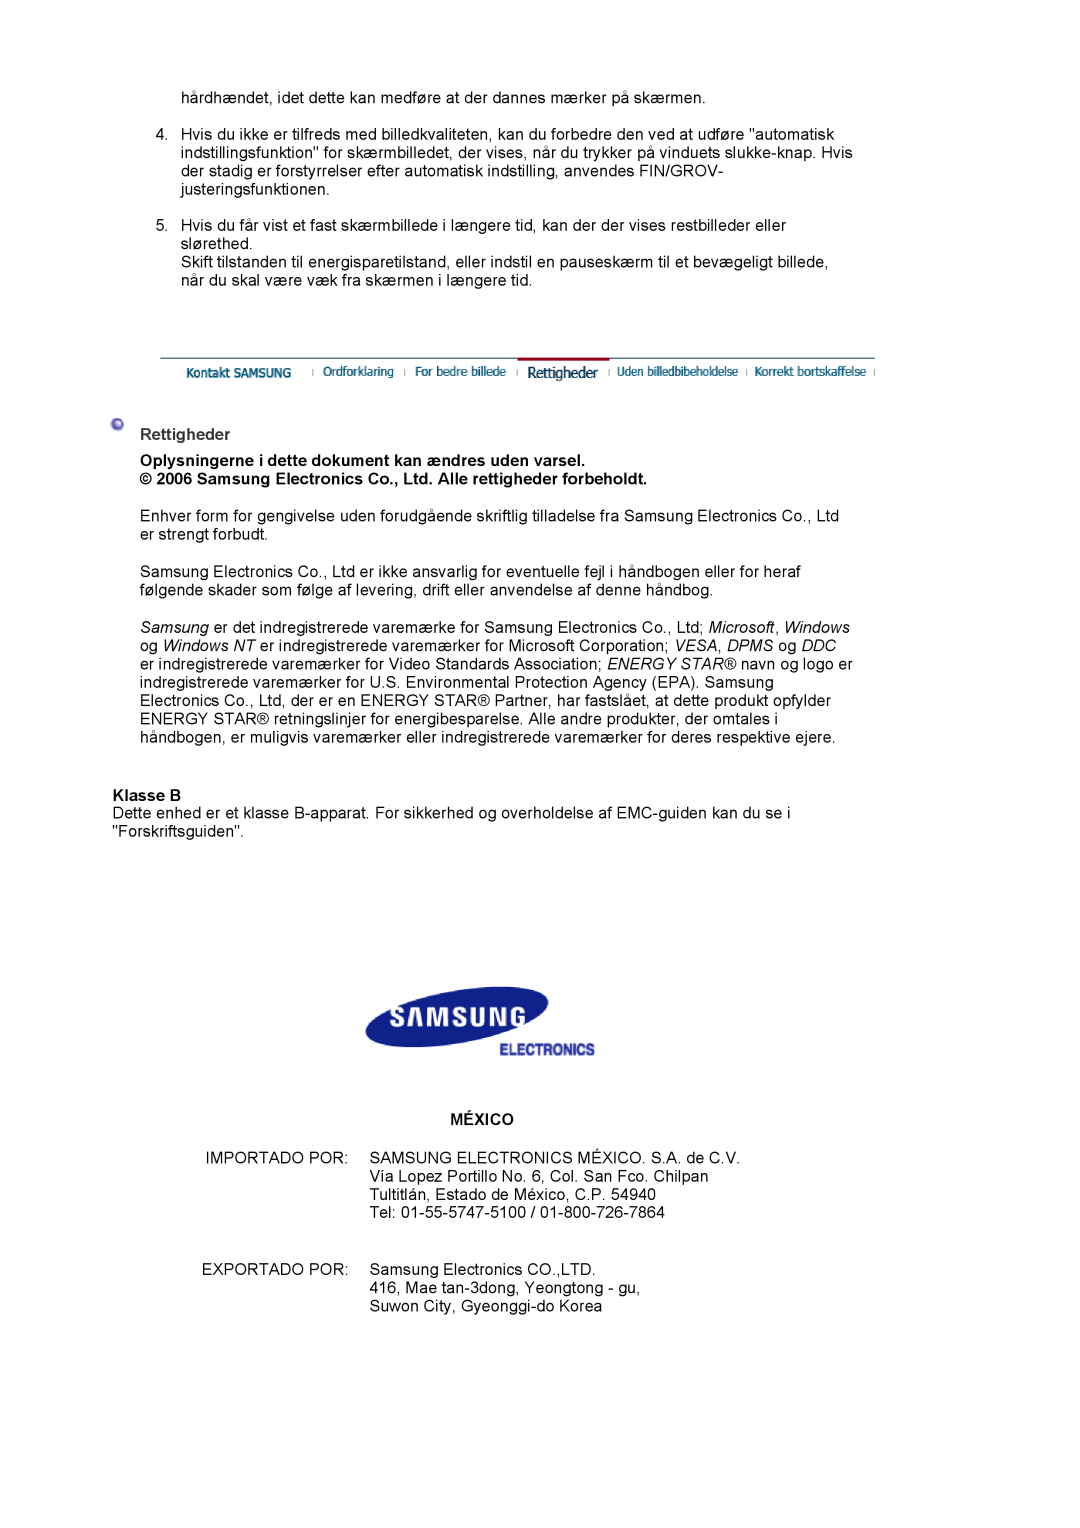 Samsung LS17MJVKS/EDC manual Rettigheder, Oplysningerne i dette dokument kan ændres uden varsel, Klasse B, México 